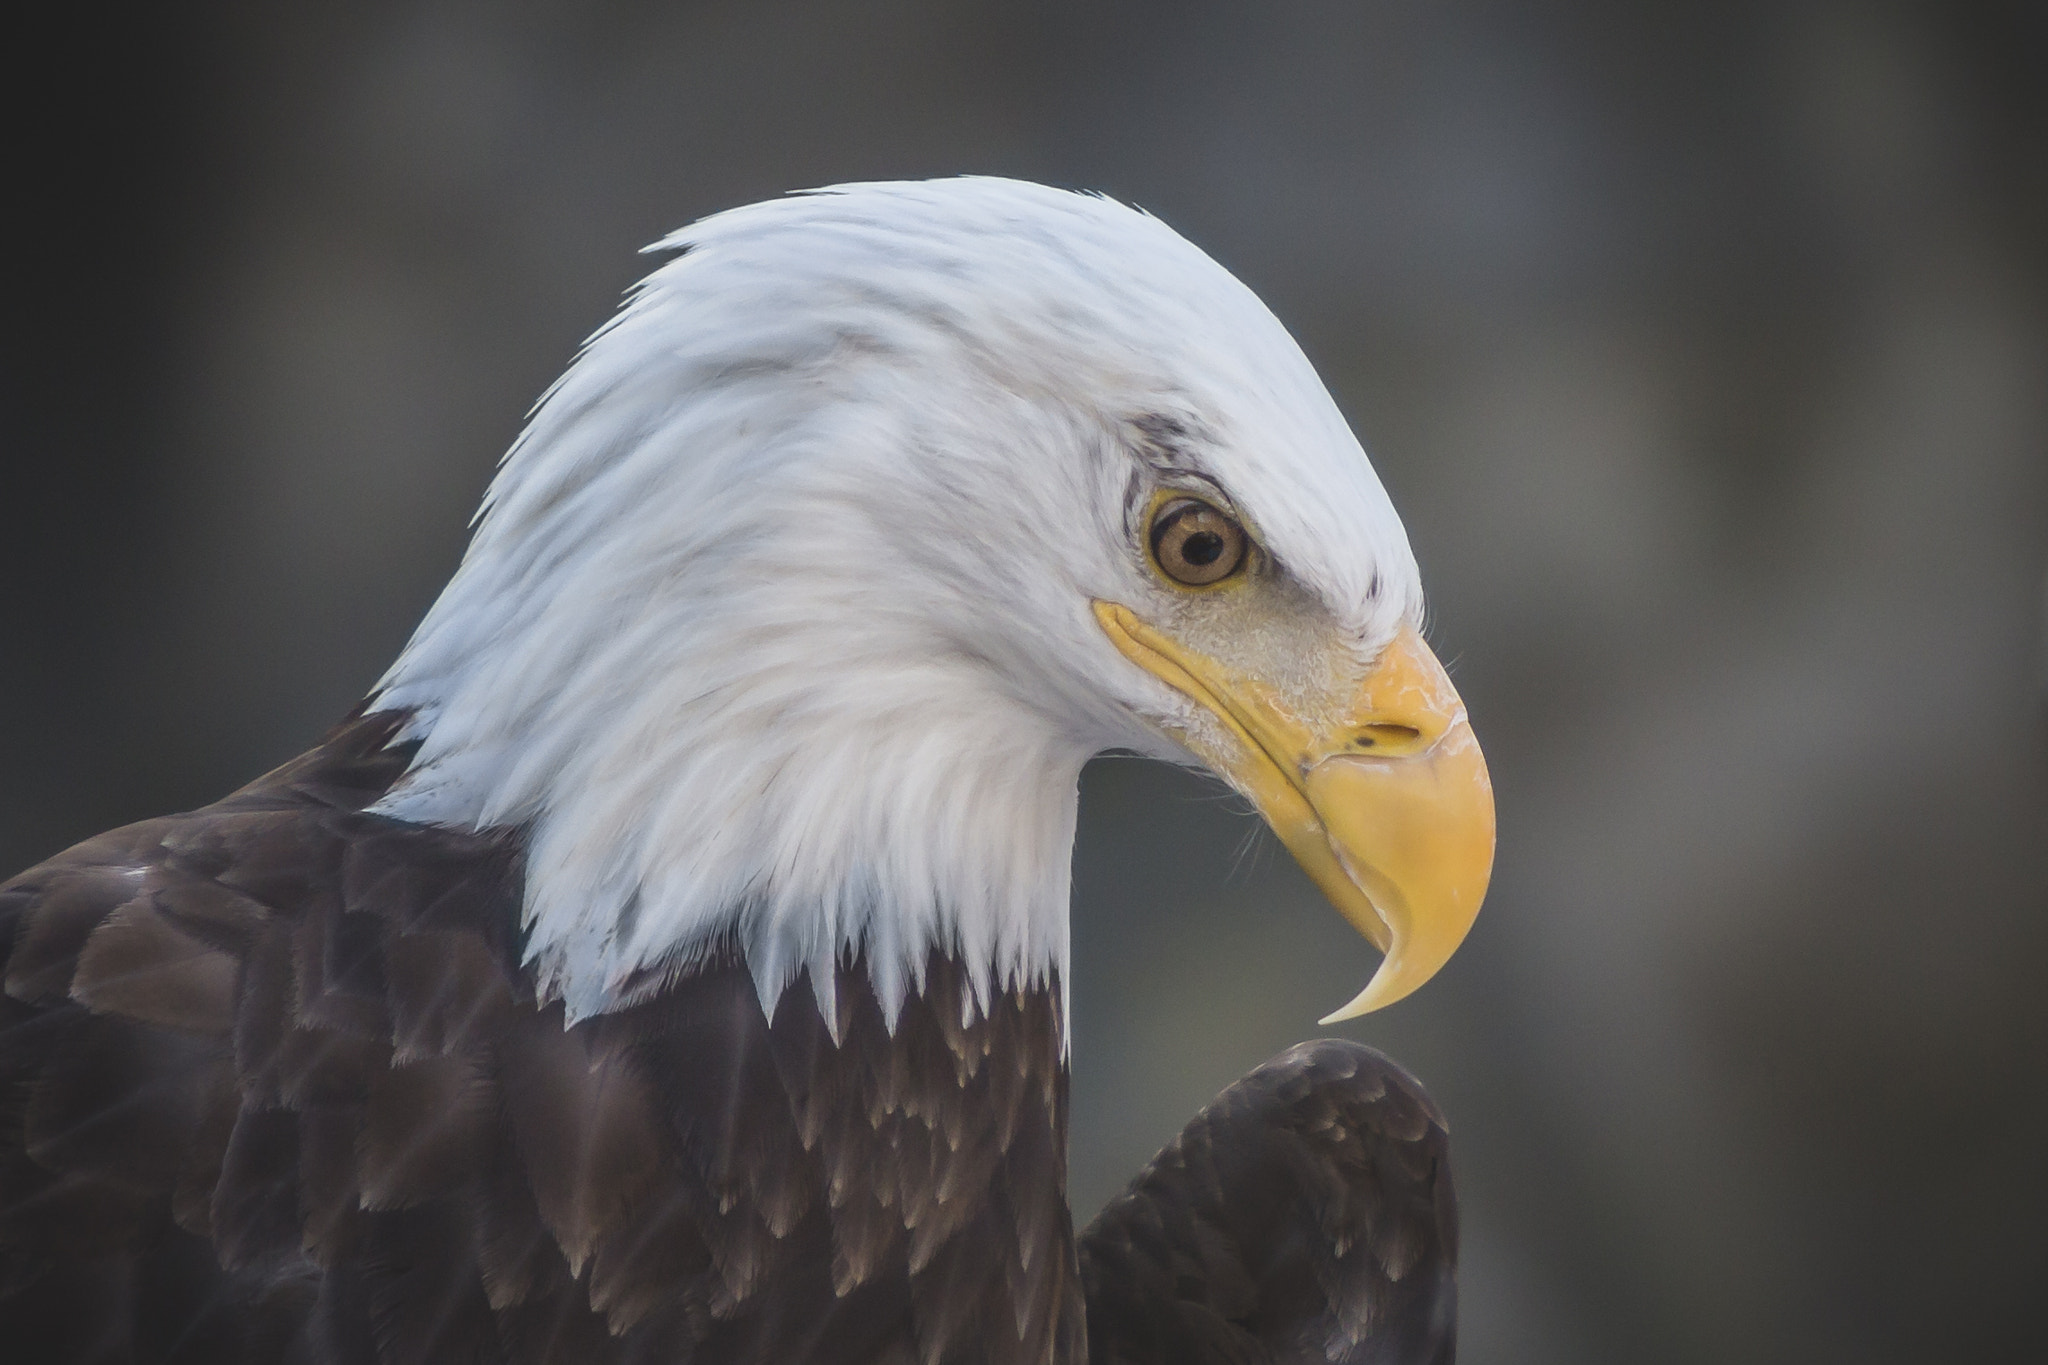 Canon EOS 6D sample photo. Bald eagle portrait photography